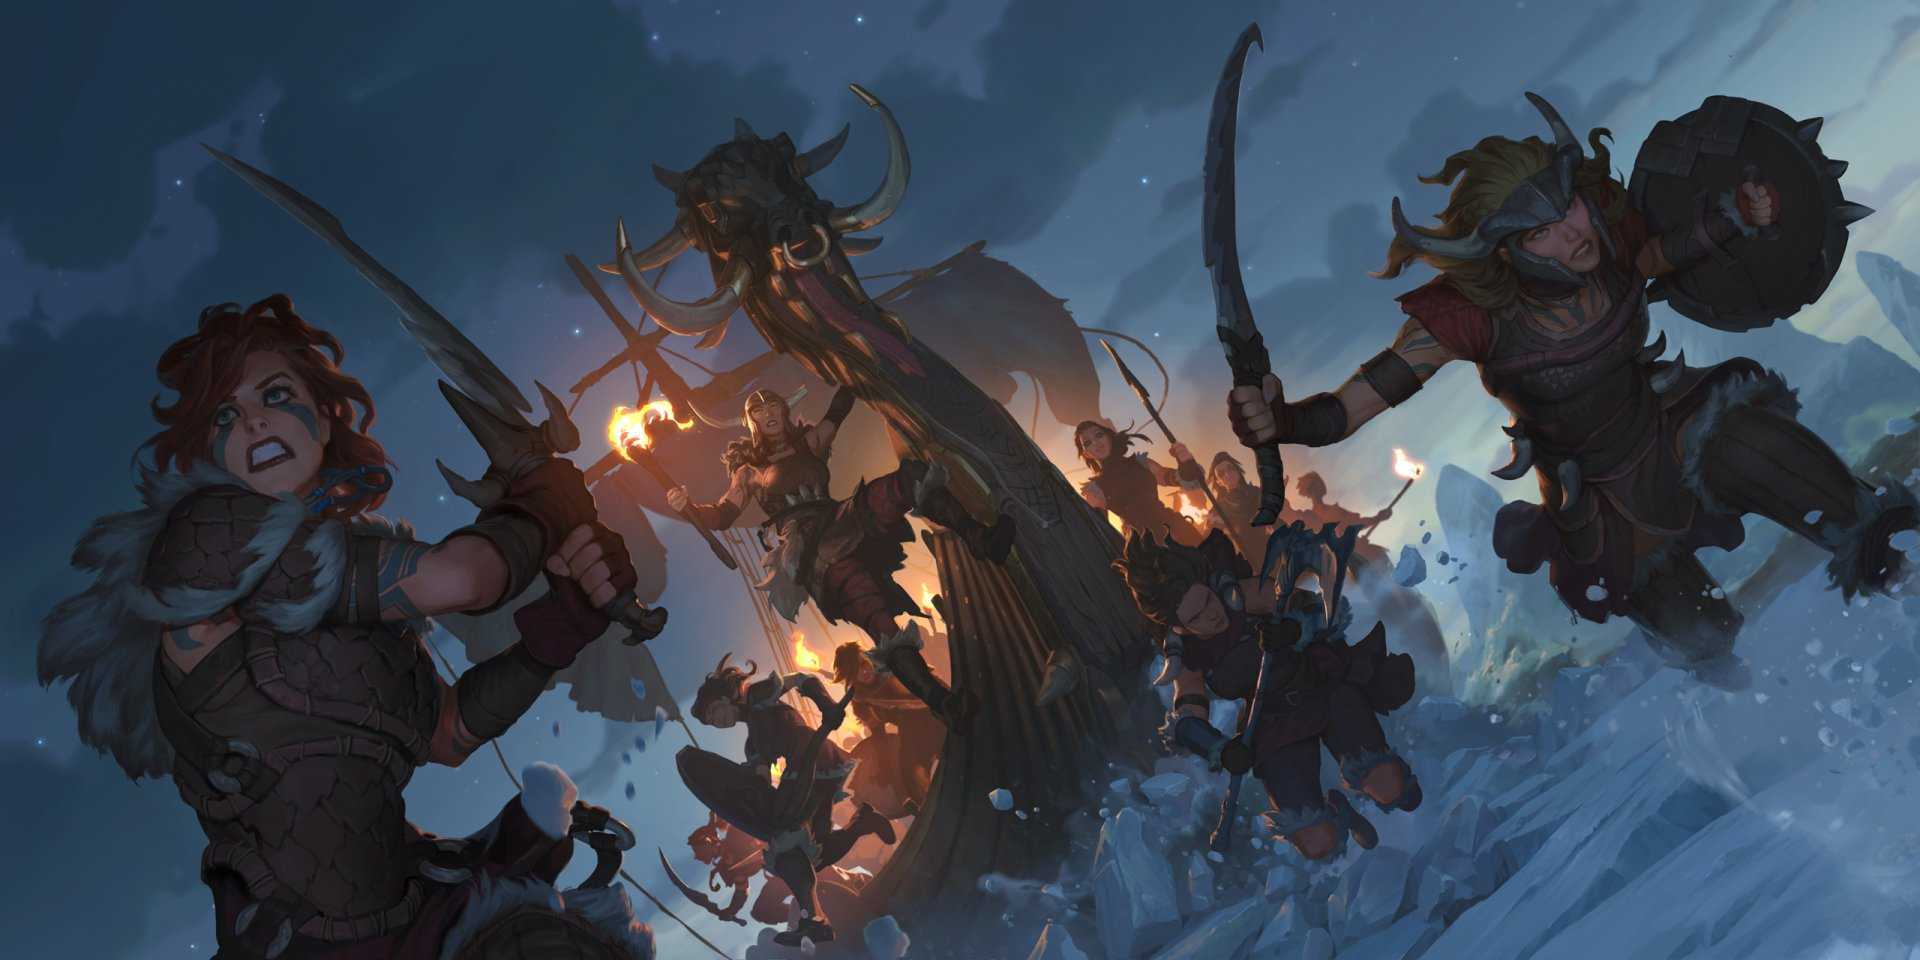 Legends of Runeterra 2021 Wallpapers